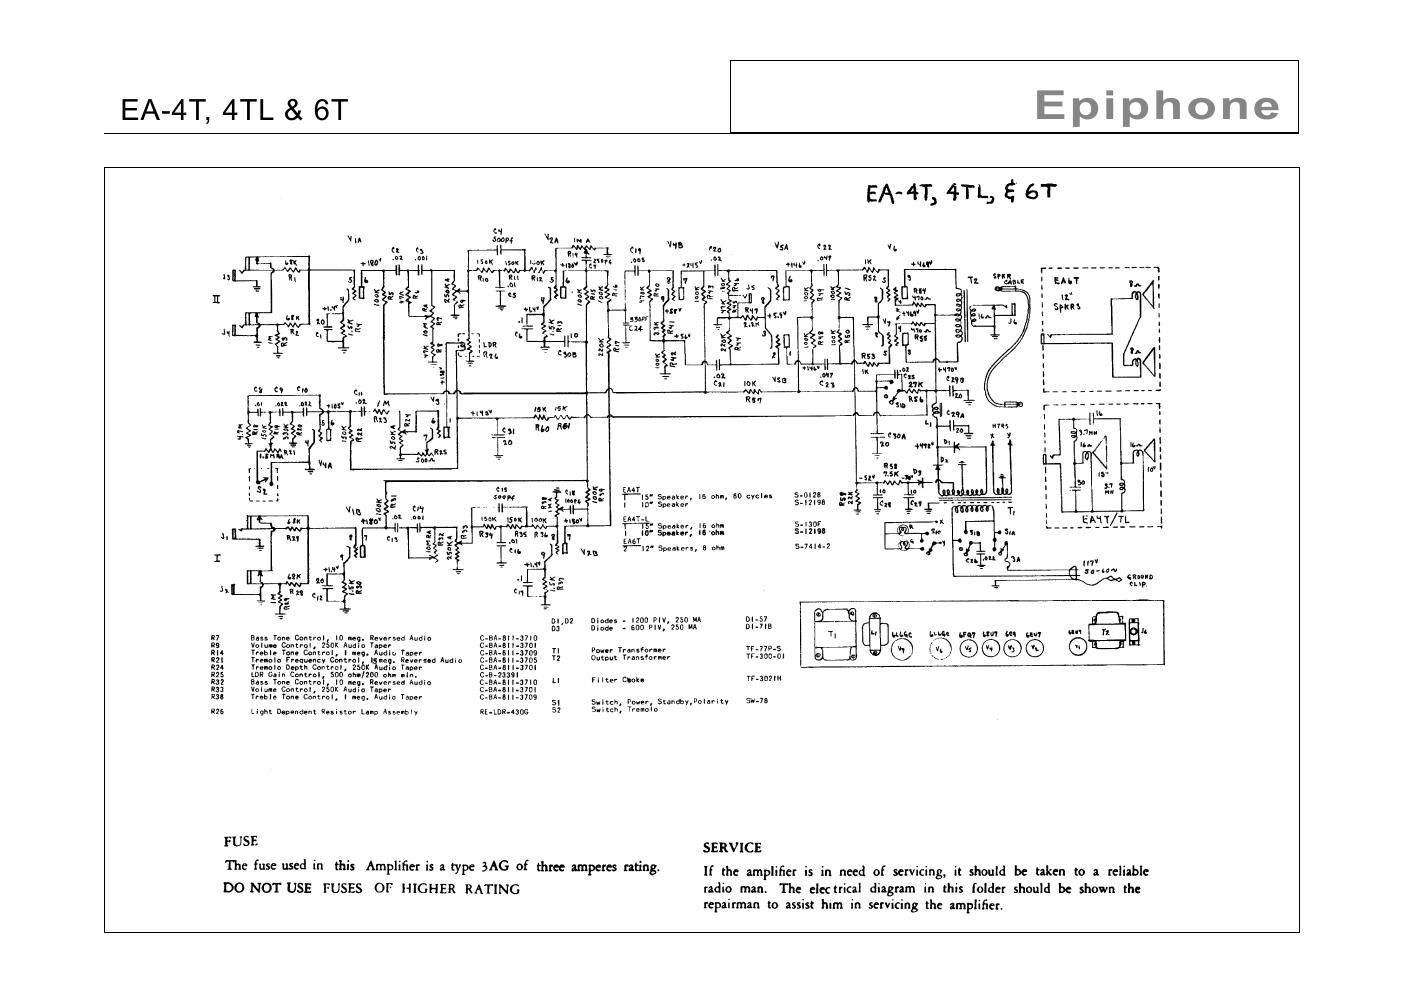 epiphone ea 4t 4tl 6t emperor schematic